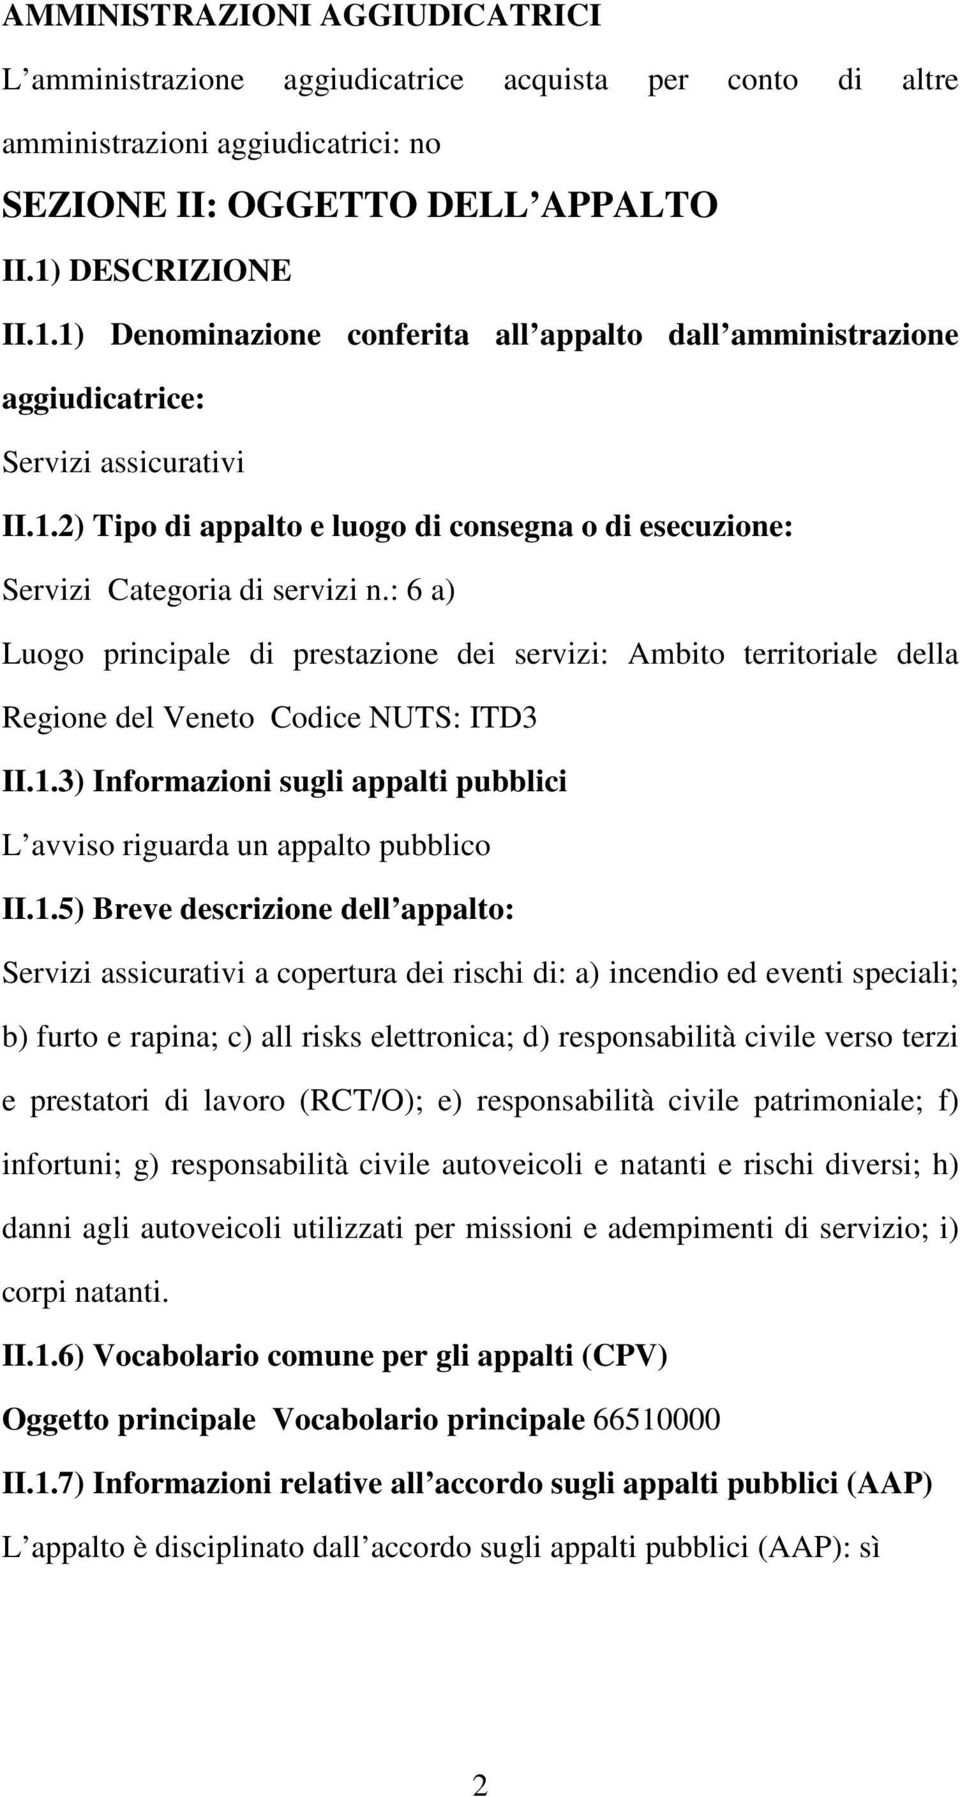 : 6 a) Luogo principale di prestazione dei servizi: Ambito territoriale della Regione del Veneto Codice NUTS: ITD3 II.1.3) Informazioni sugli appalti pubblici L avviso riguarda un appalto pubblico II.